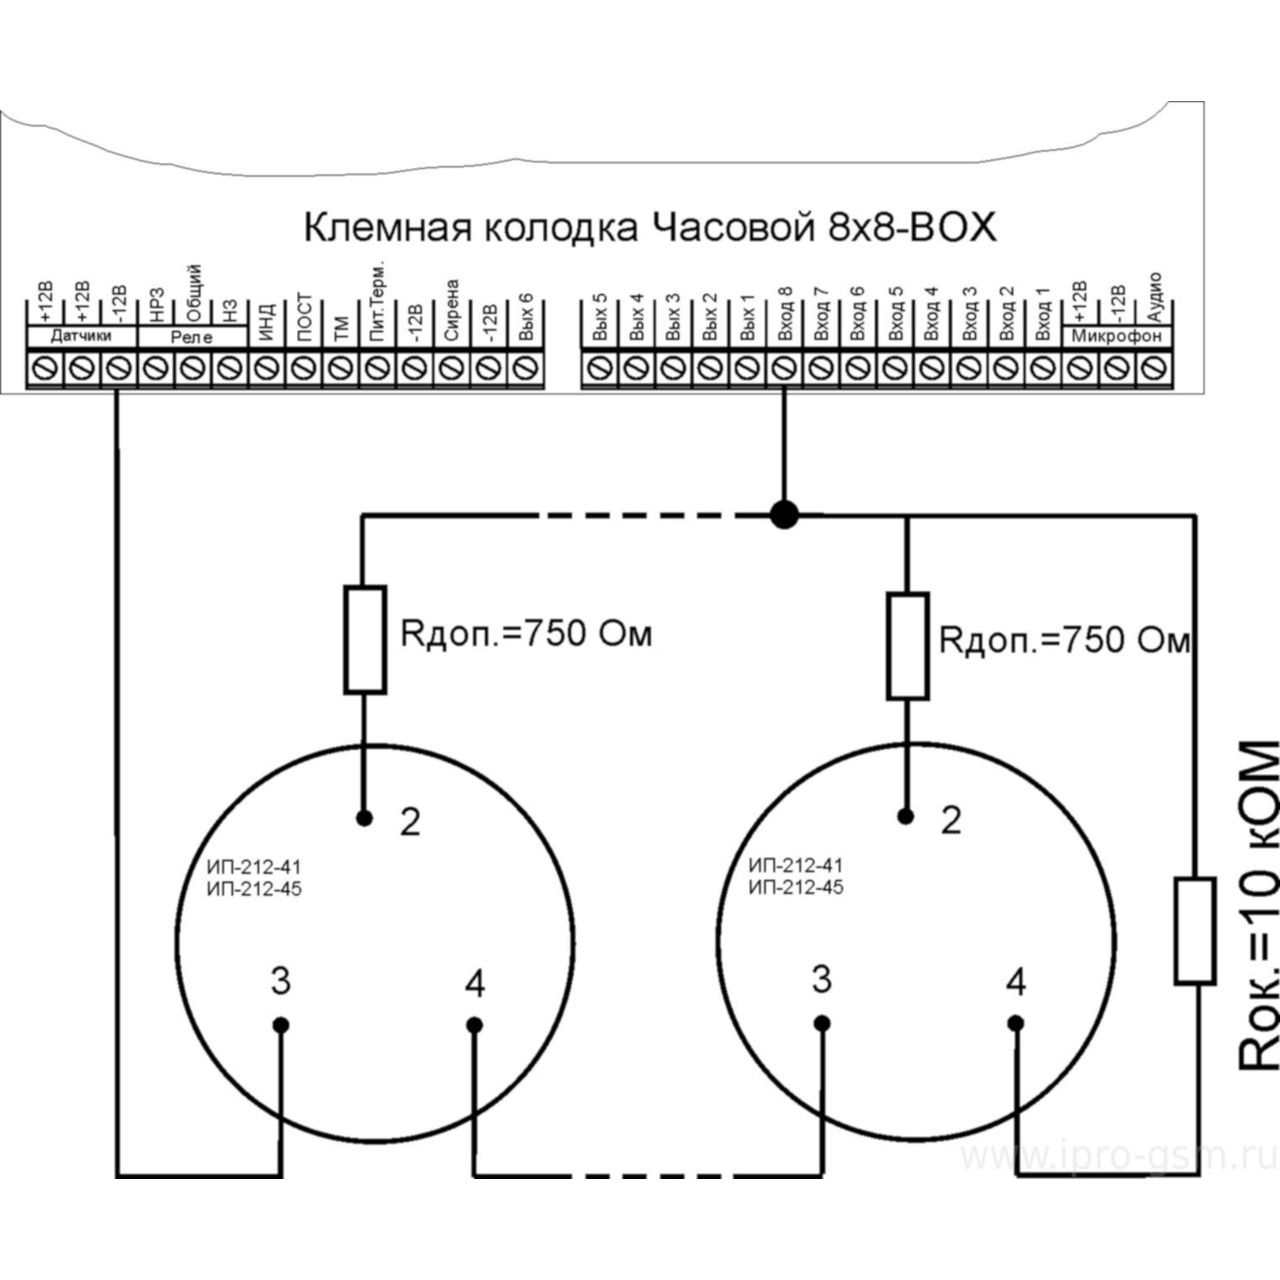 Схема подключения пожарных извещателей с оконечным и дополнительным резистором к GSM-сигнализации Часовой 8х8 RF BOX